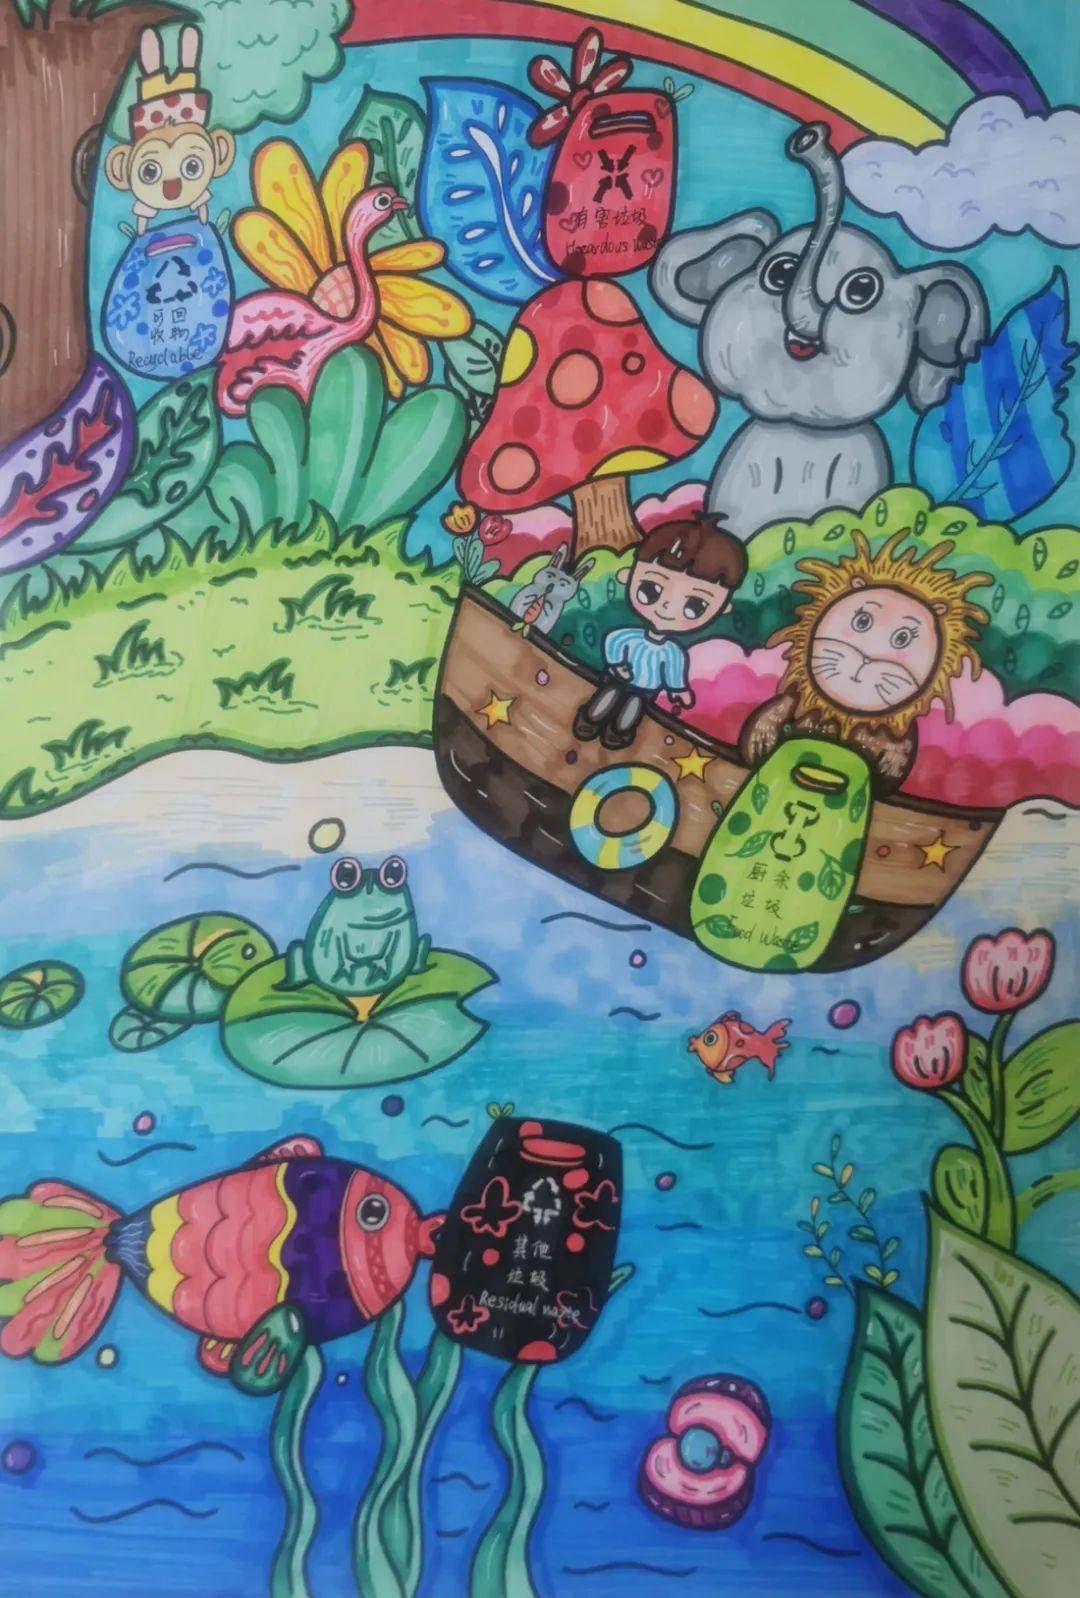 苏州市小学生"垃圾分类,绿色苏州"绘画比赛获奖作品揭晓,港城学子喜获